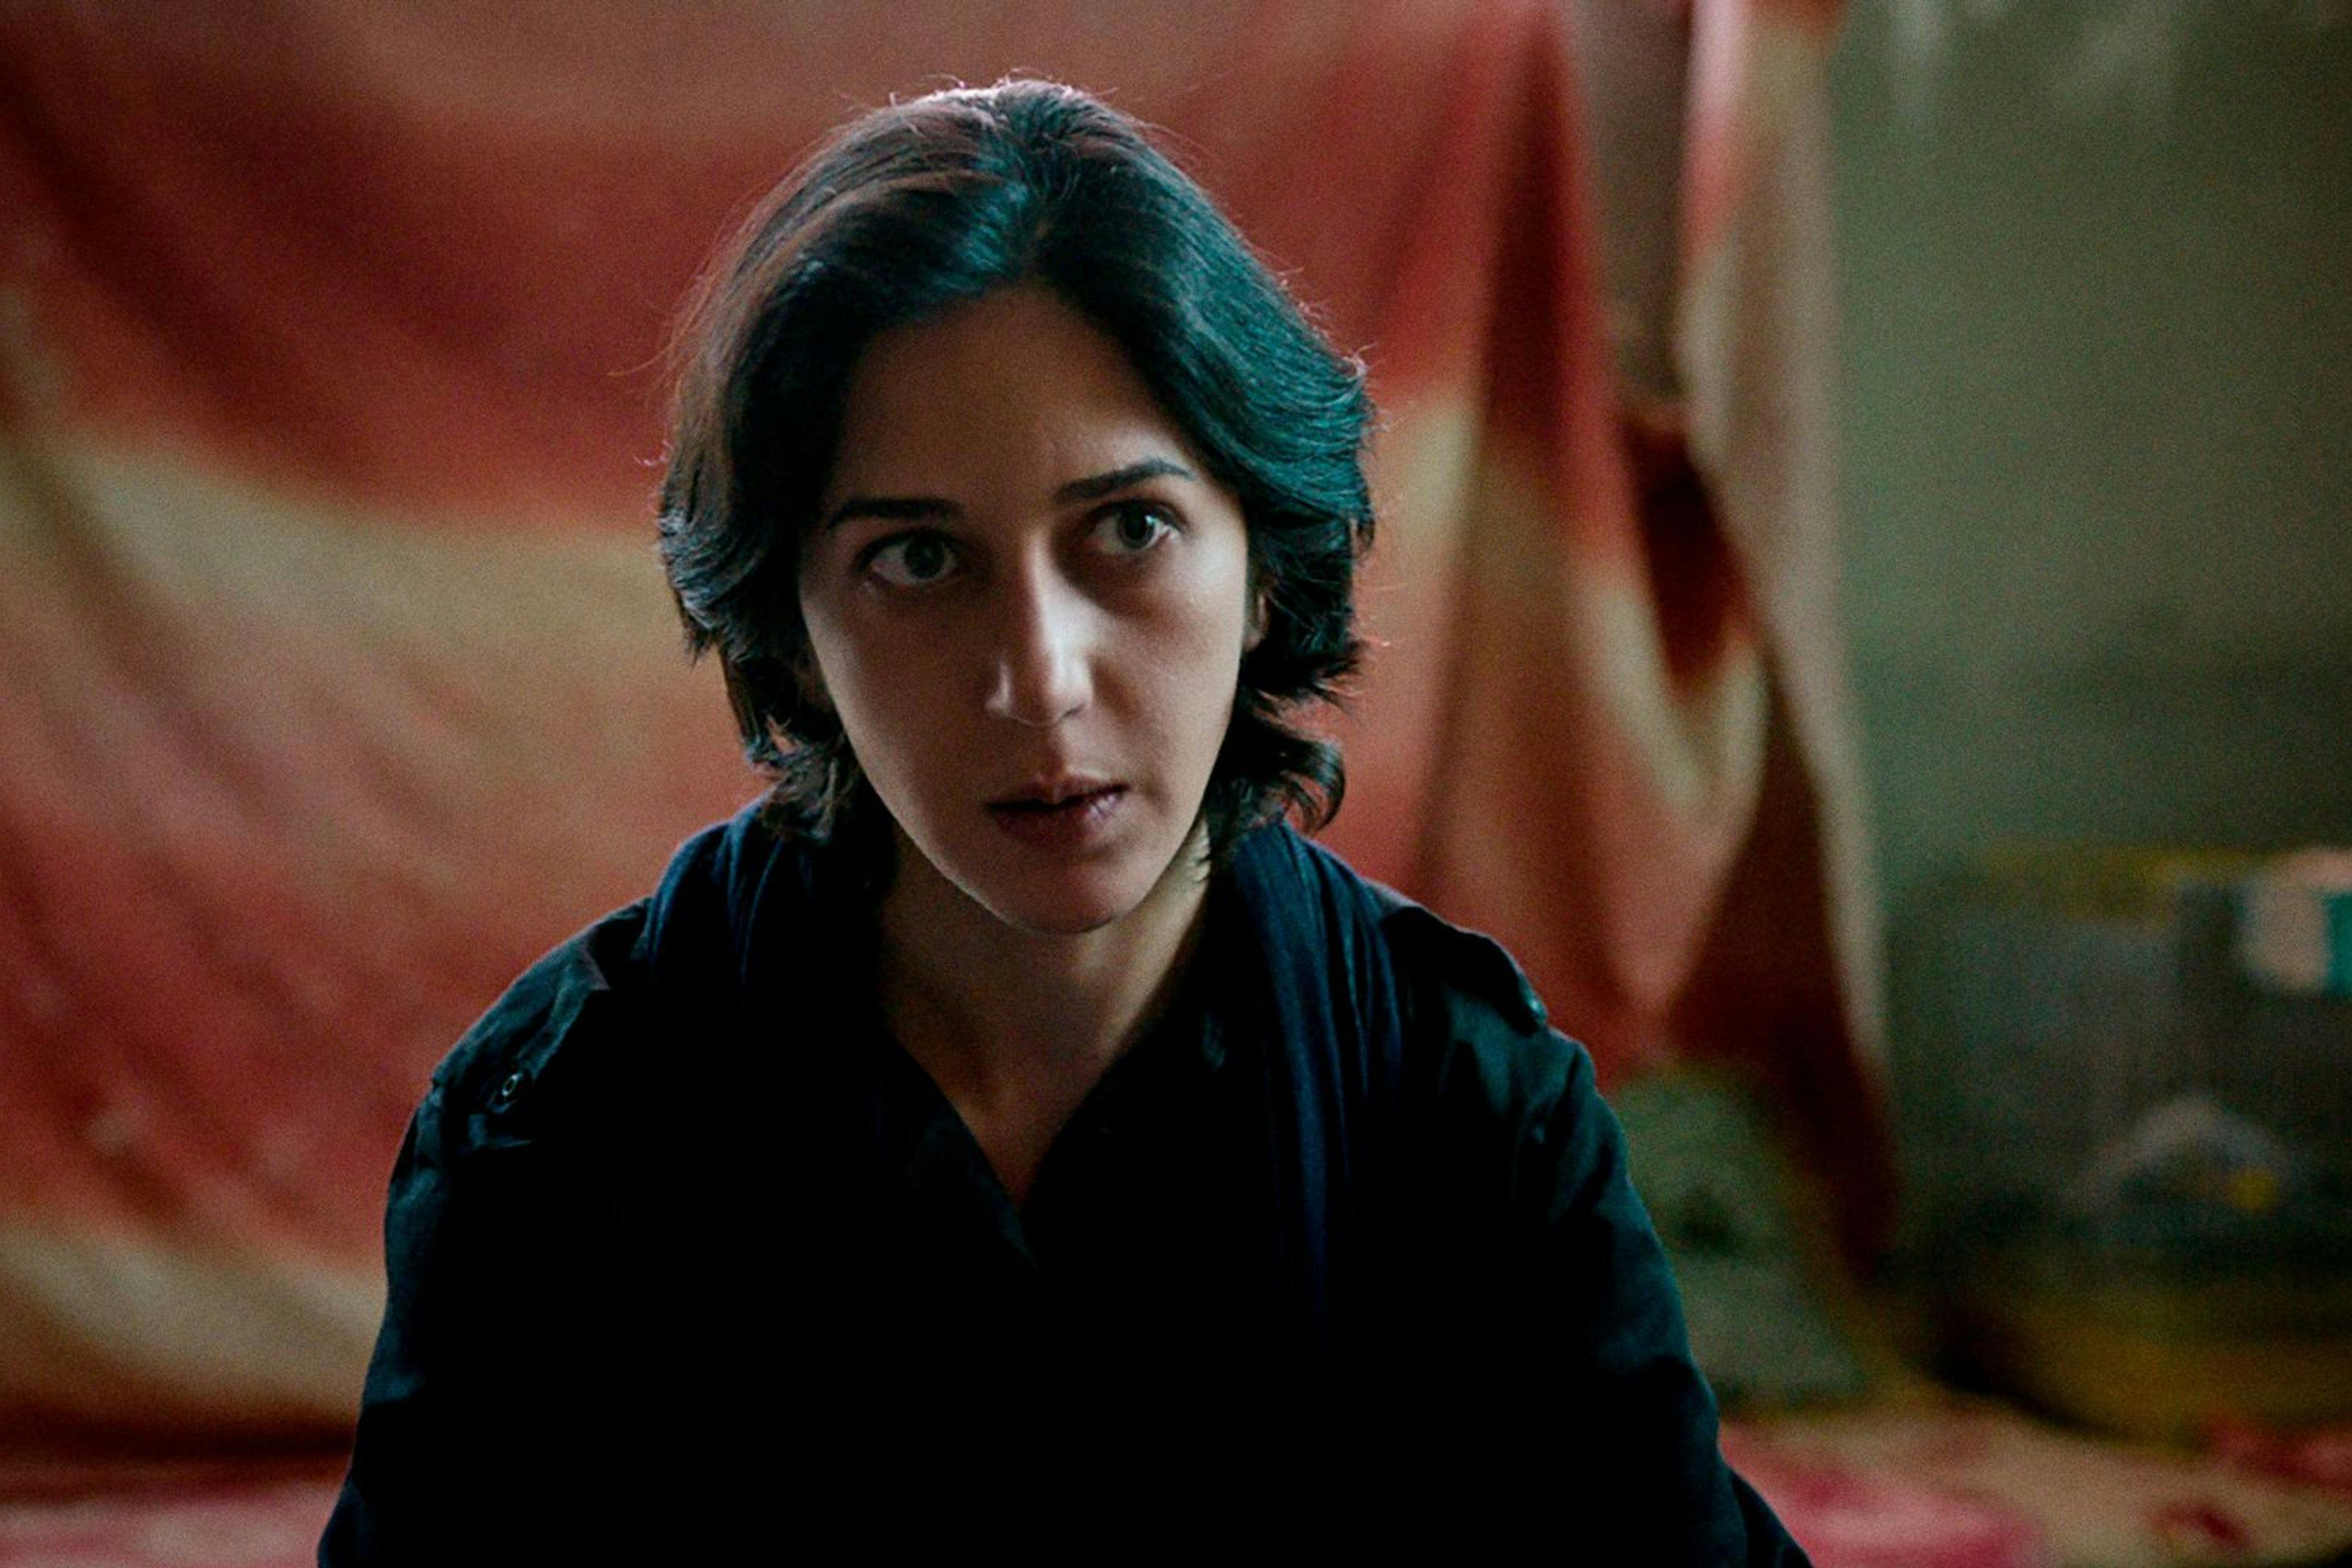 La actriz Zar Amir-Ebrahimi, en una imagen promocional de la película 'Holy Spider', de Ali Abbasi